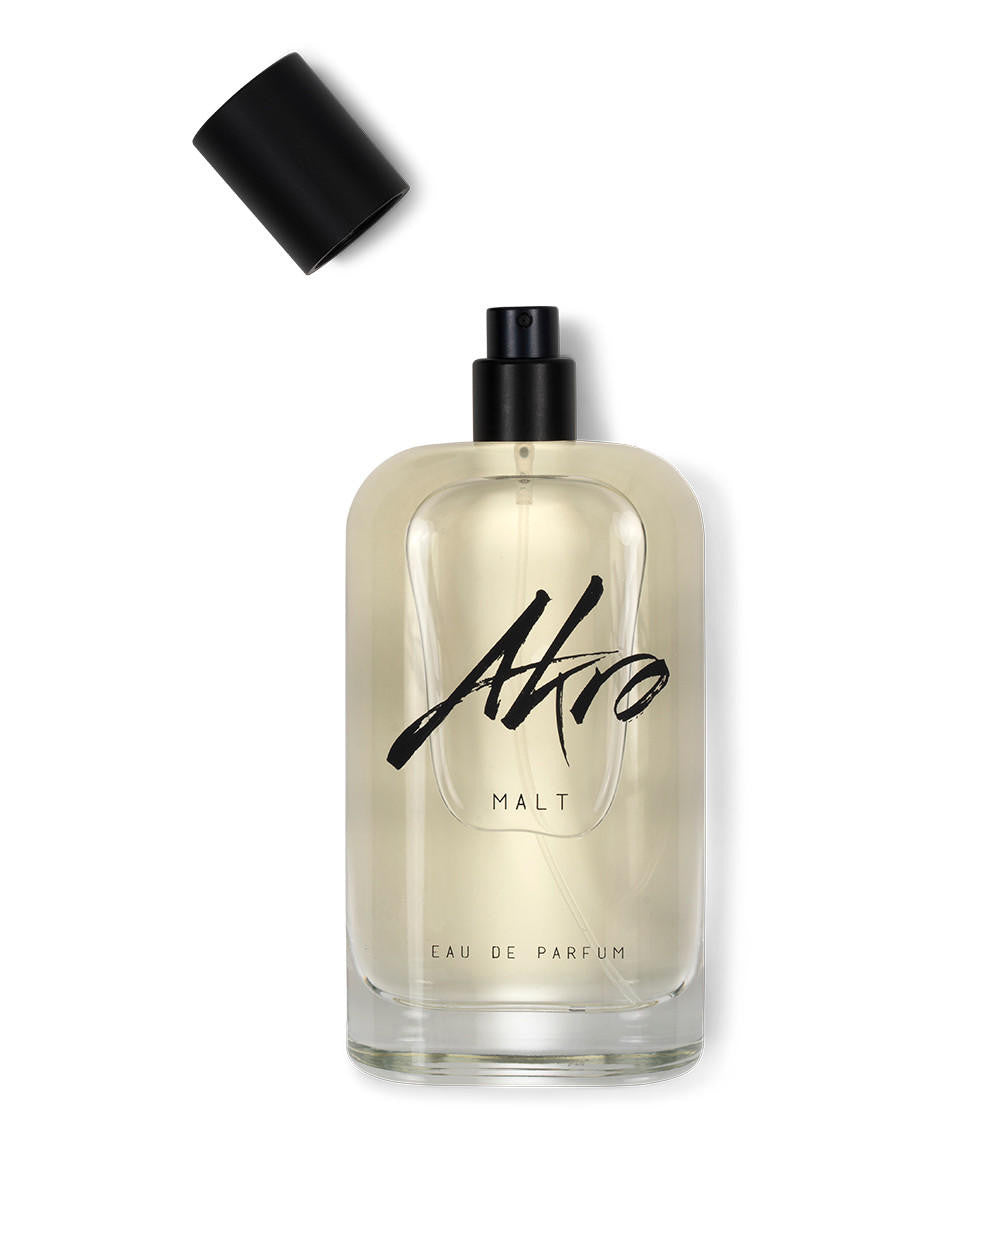 Akro Fragrances Akro Malt Eau de Parfum 